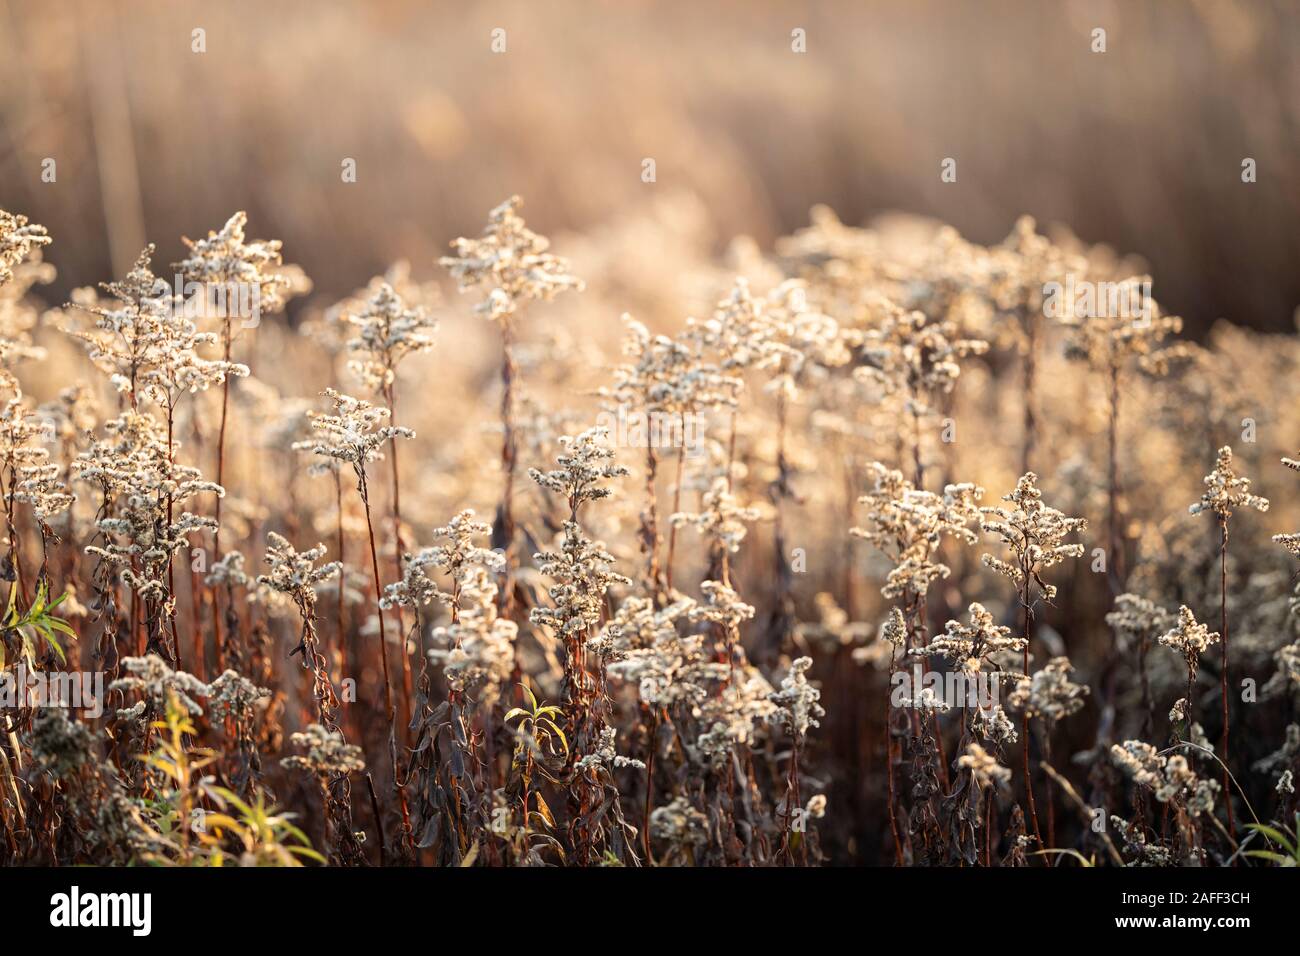 Fleurs fanées à sec de verge d'or Solidago canadensis ou par la mer. Les couleurs douces de la fin de l'automne, soleil novembre heure d'or. Banque D'Images